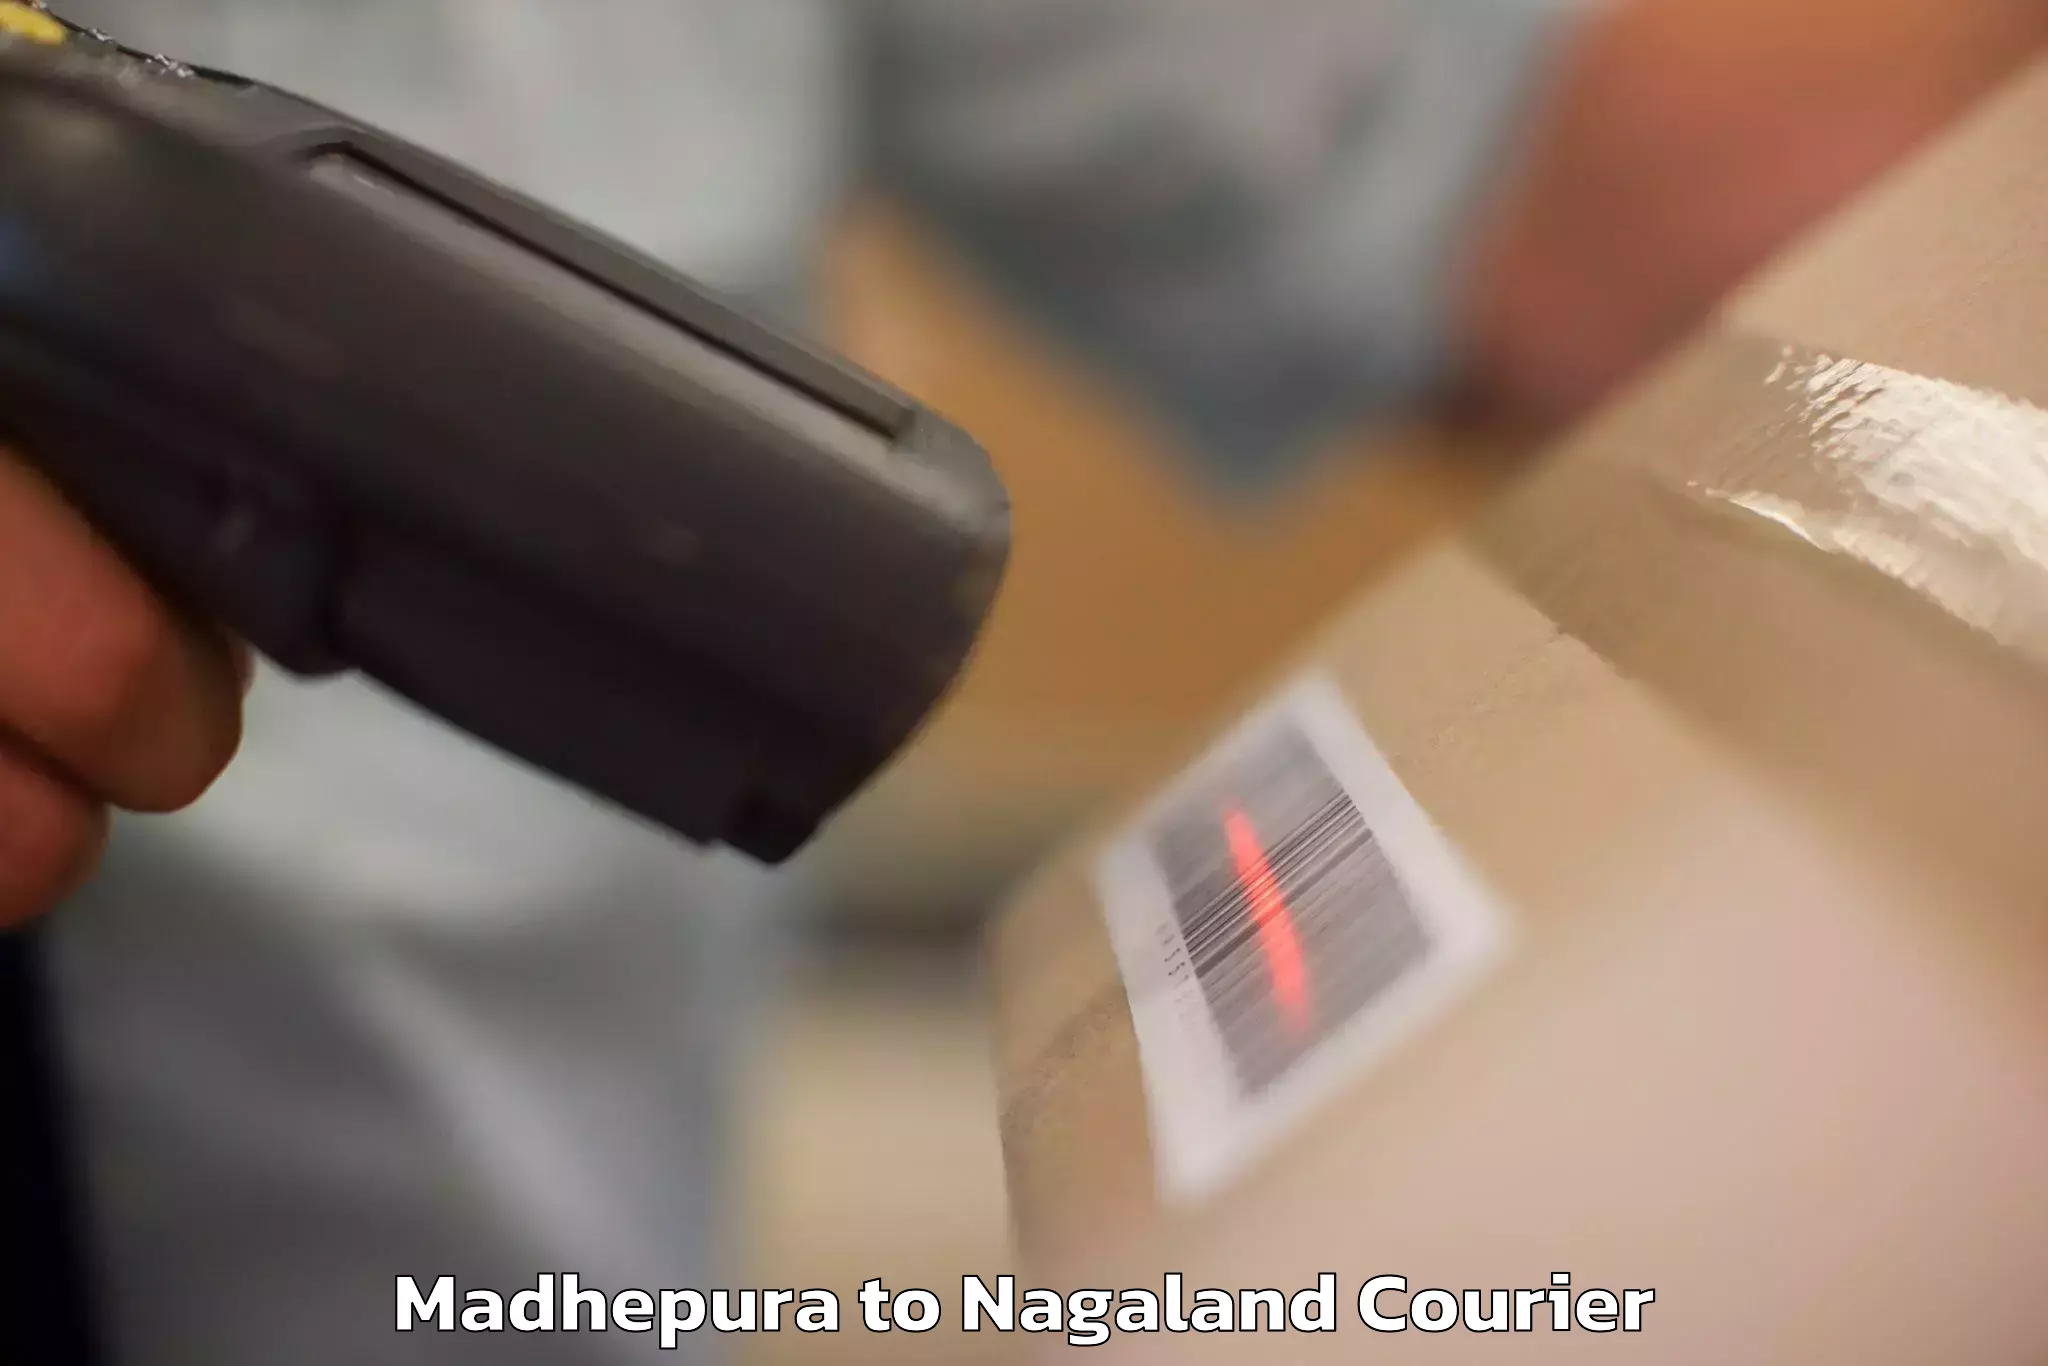 Luggage transport company Madhepura to Nagaland